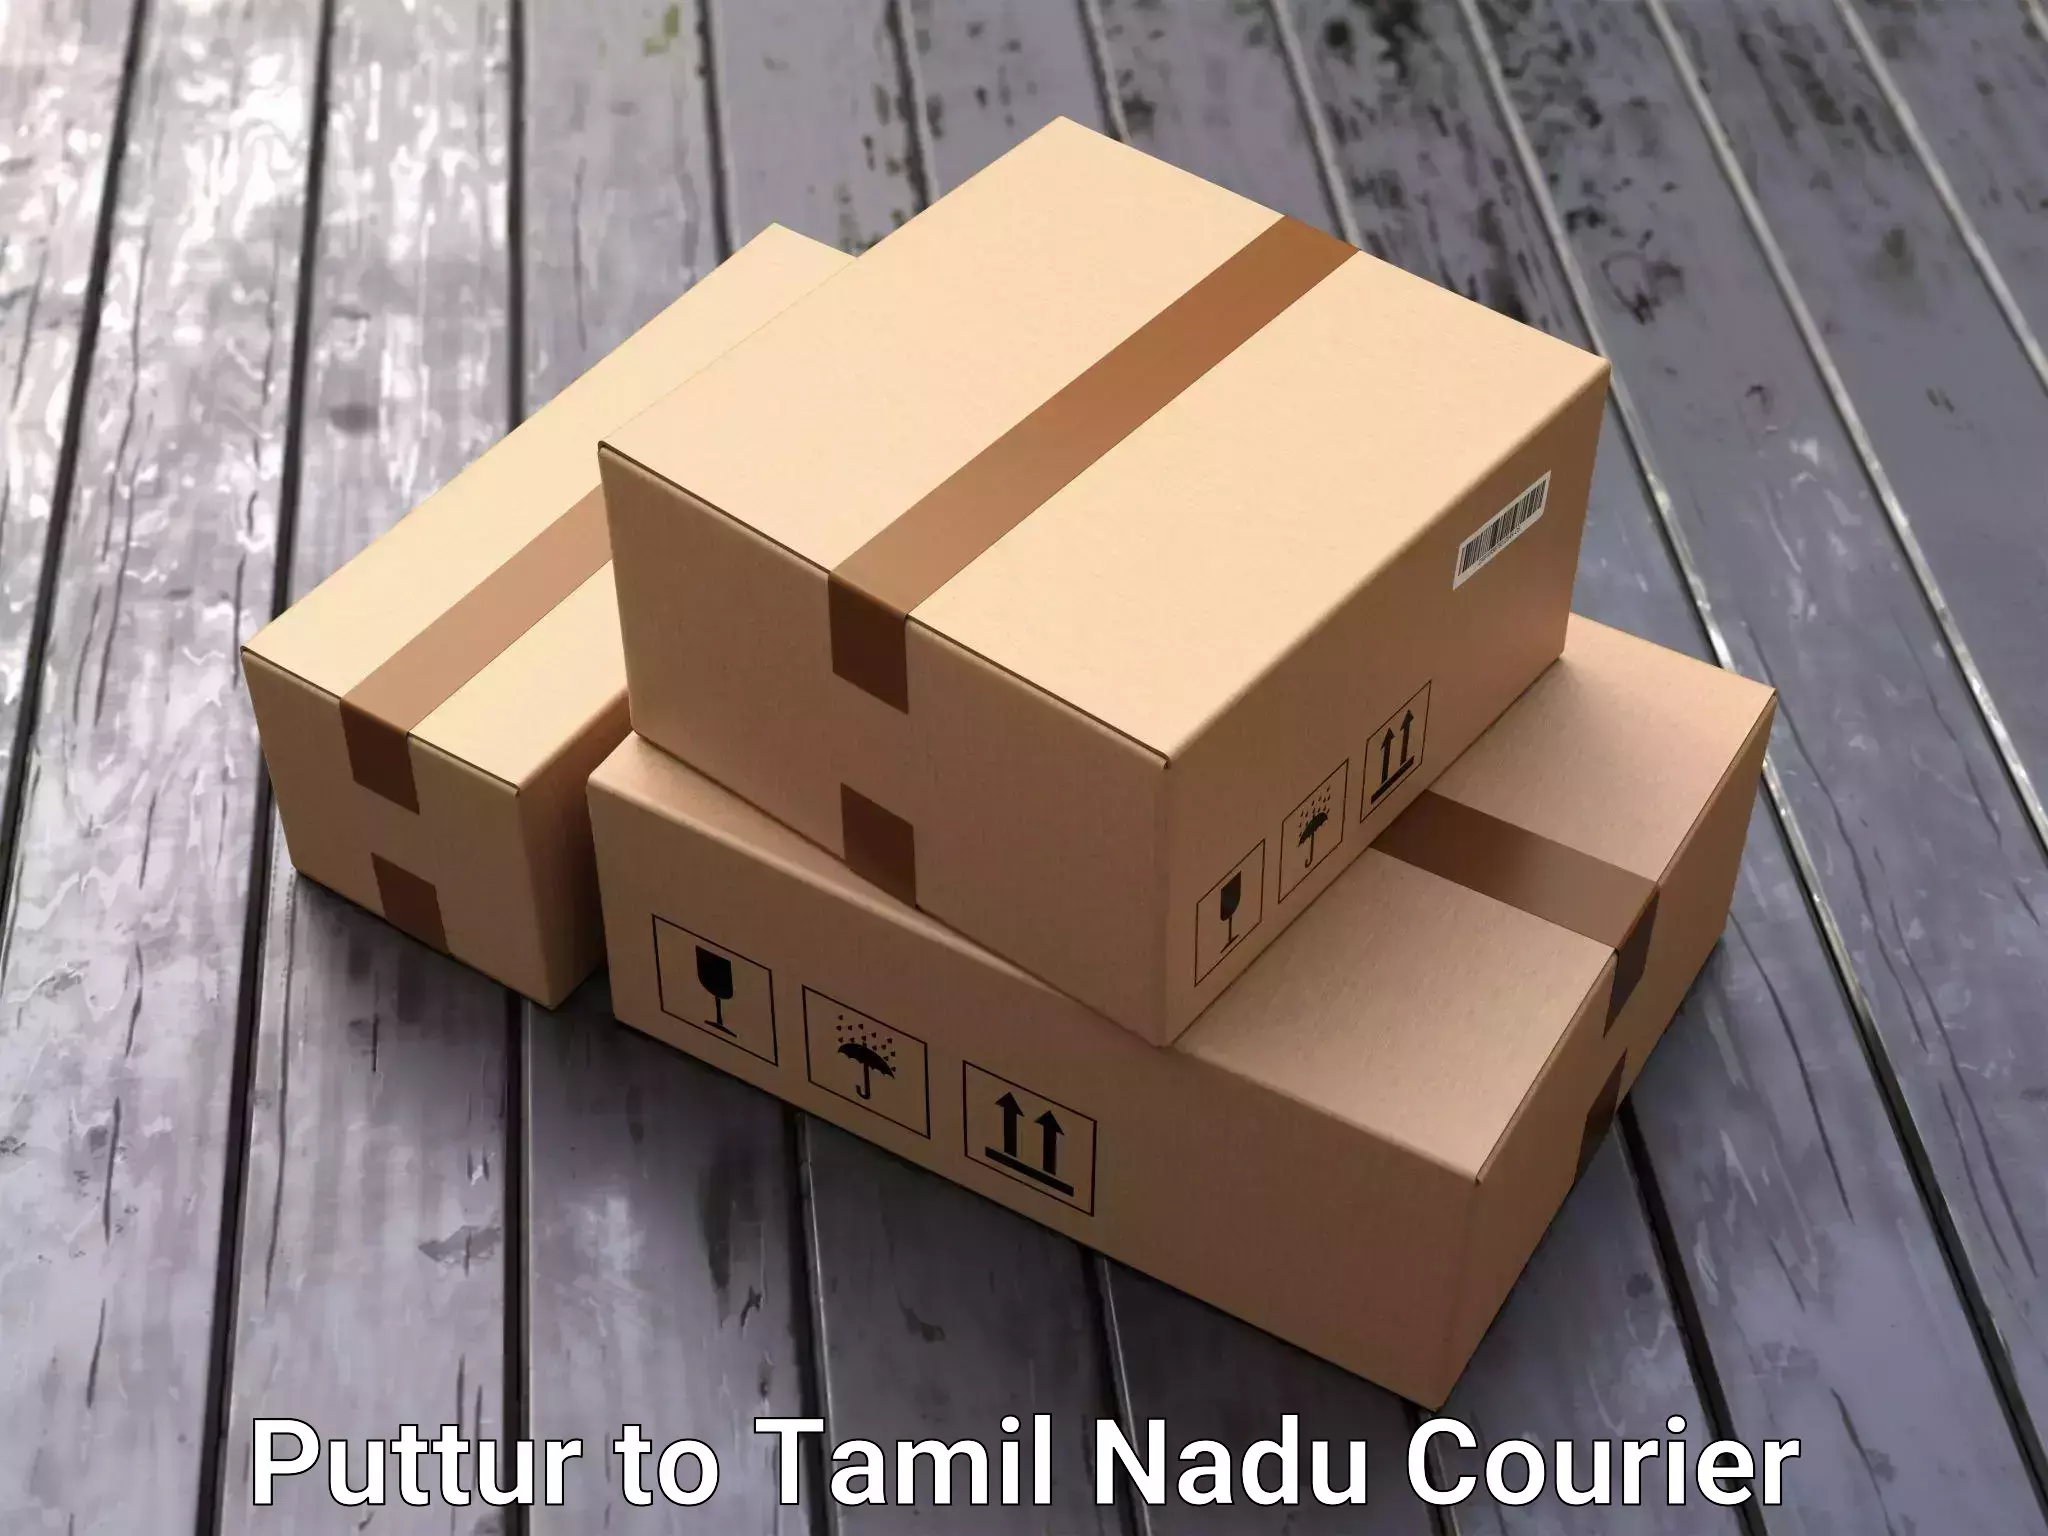 Trusted furniture transport in Puttur to Pennagaram